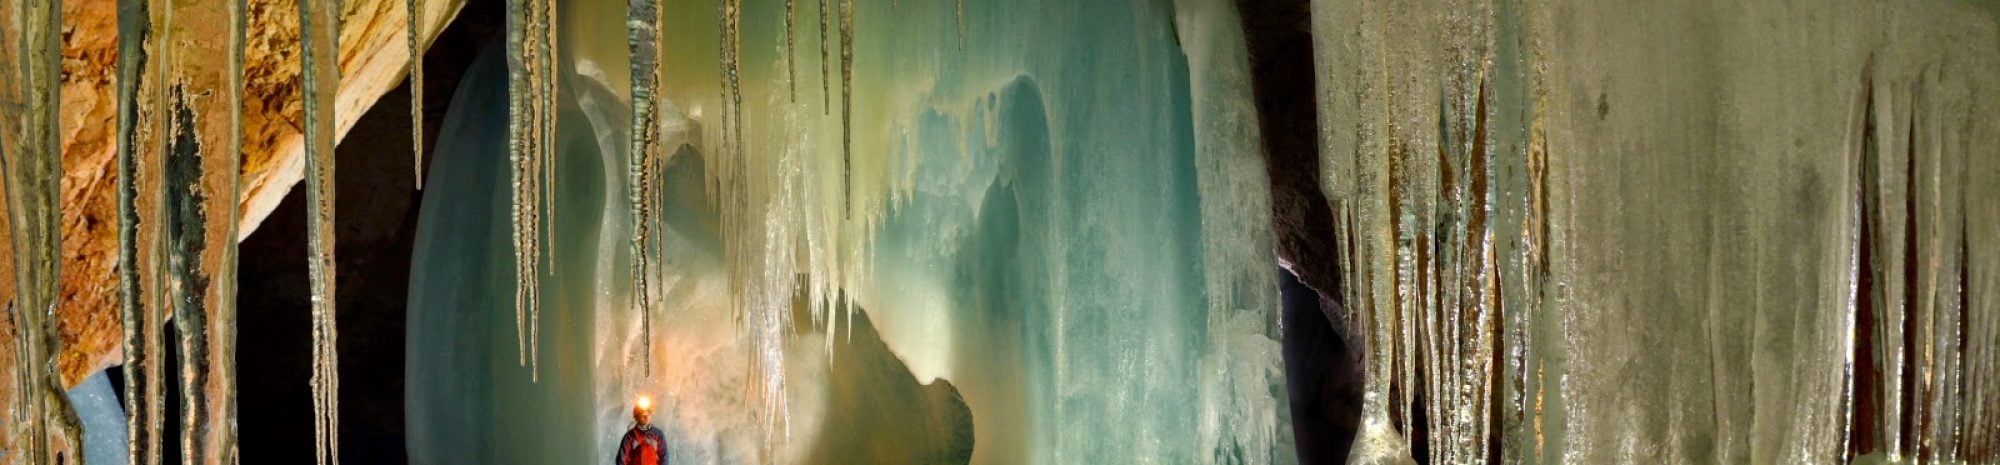 Découvrez la plus grande grotte de glace du monde en Autriche